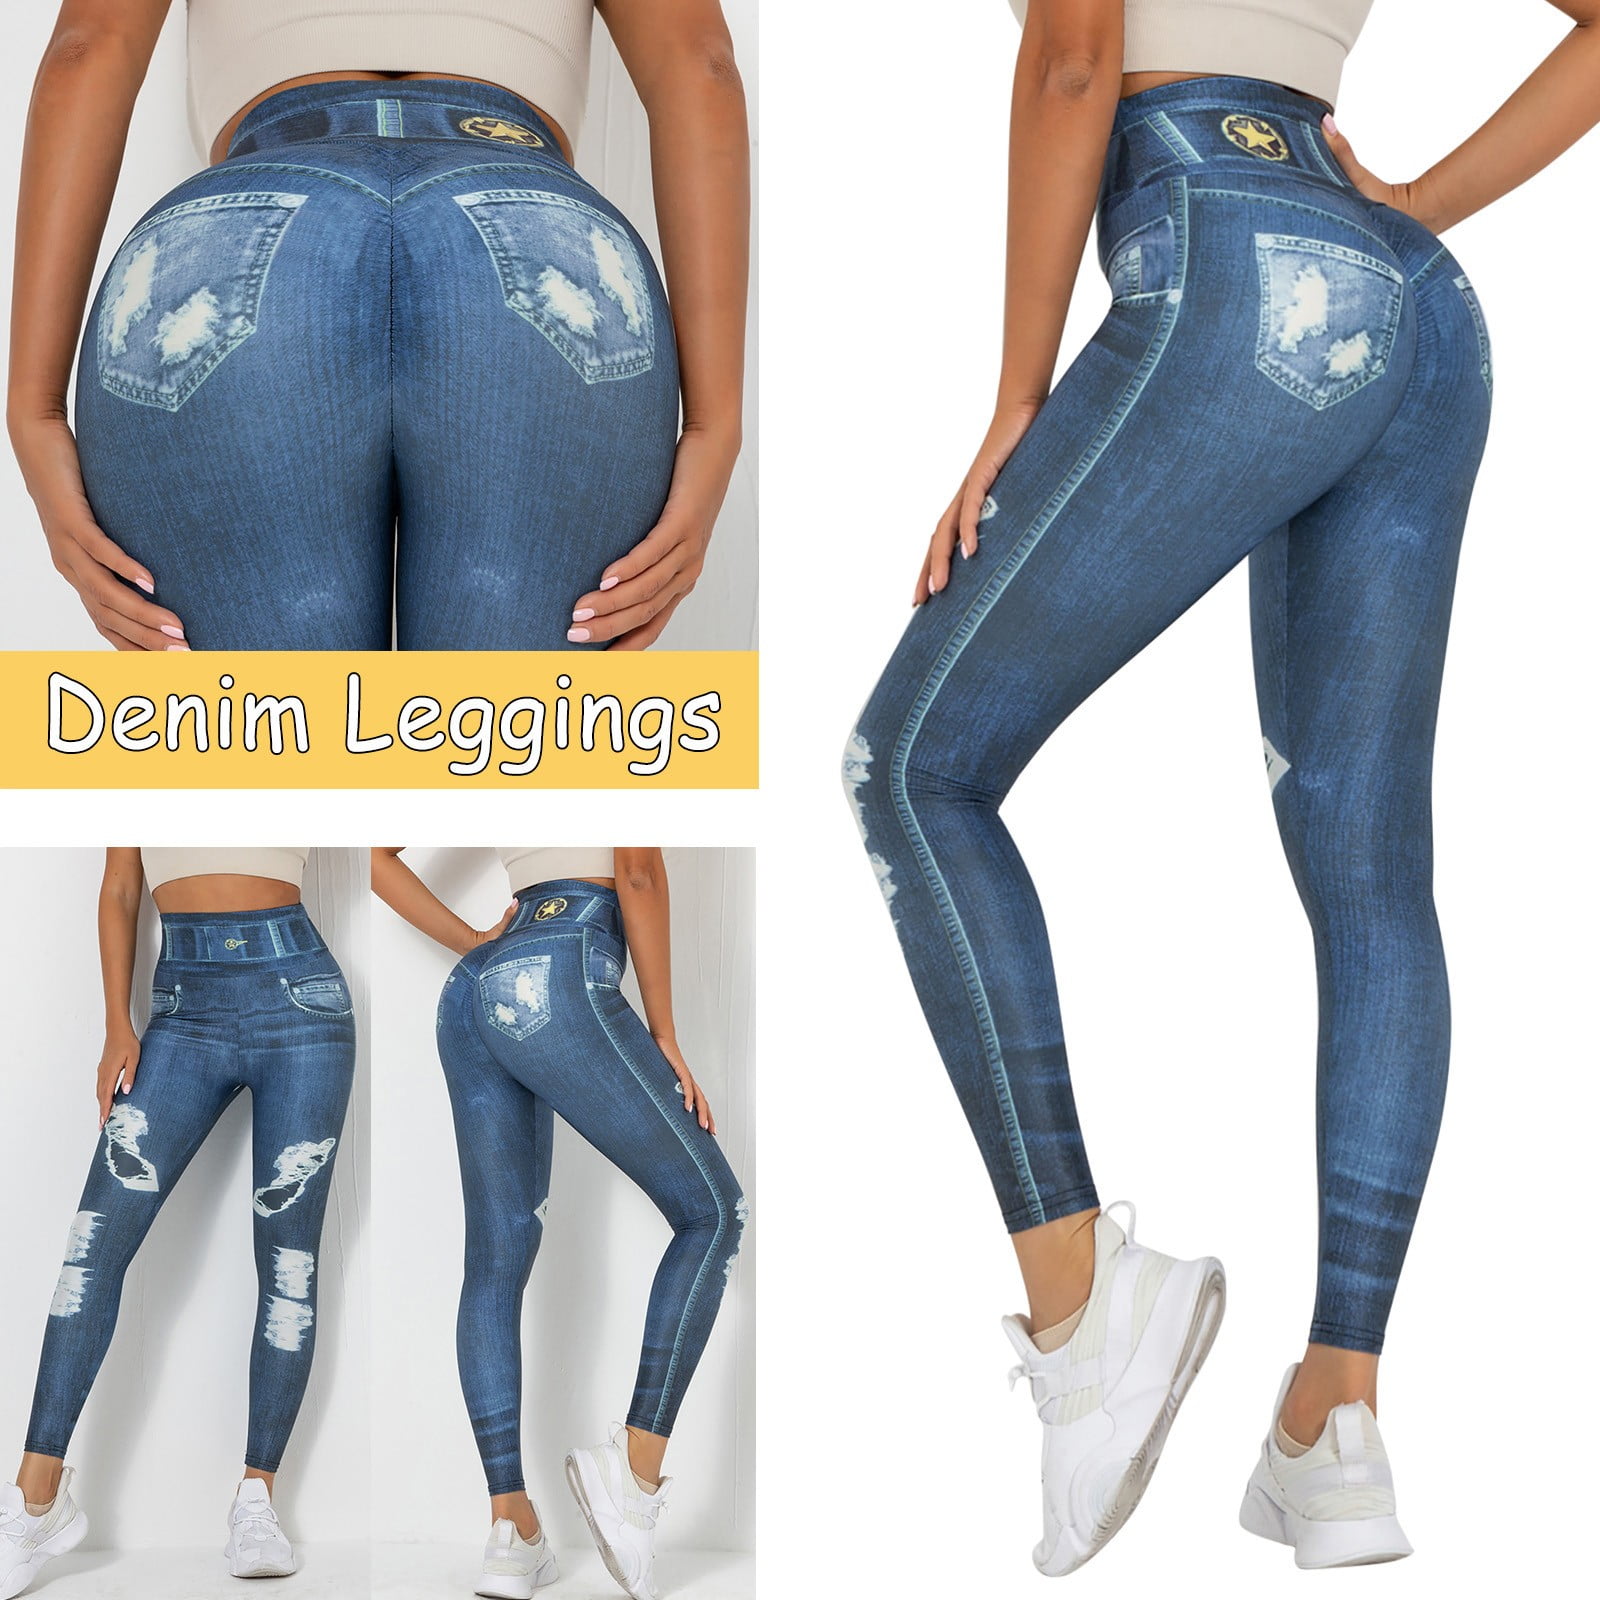 women leggings high waist cotton Women's Denim Print Jeans Look Like  Leggings Stretchy High Waist Slim Skinny Jeggings